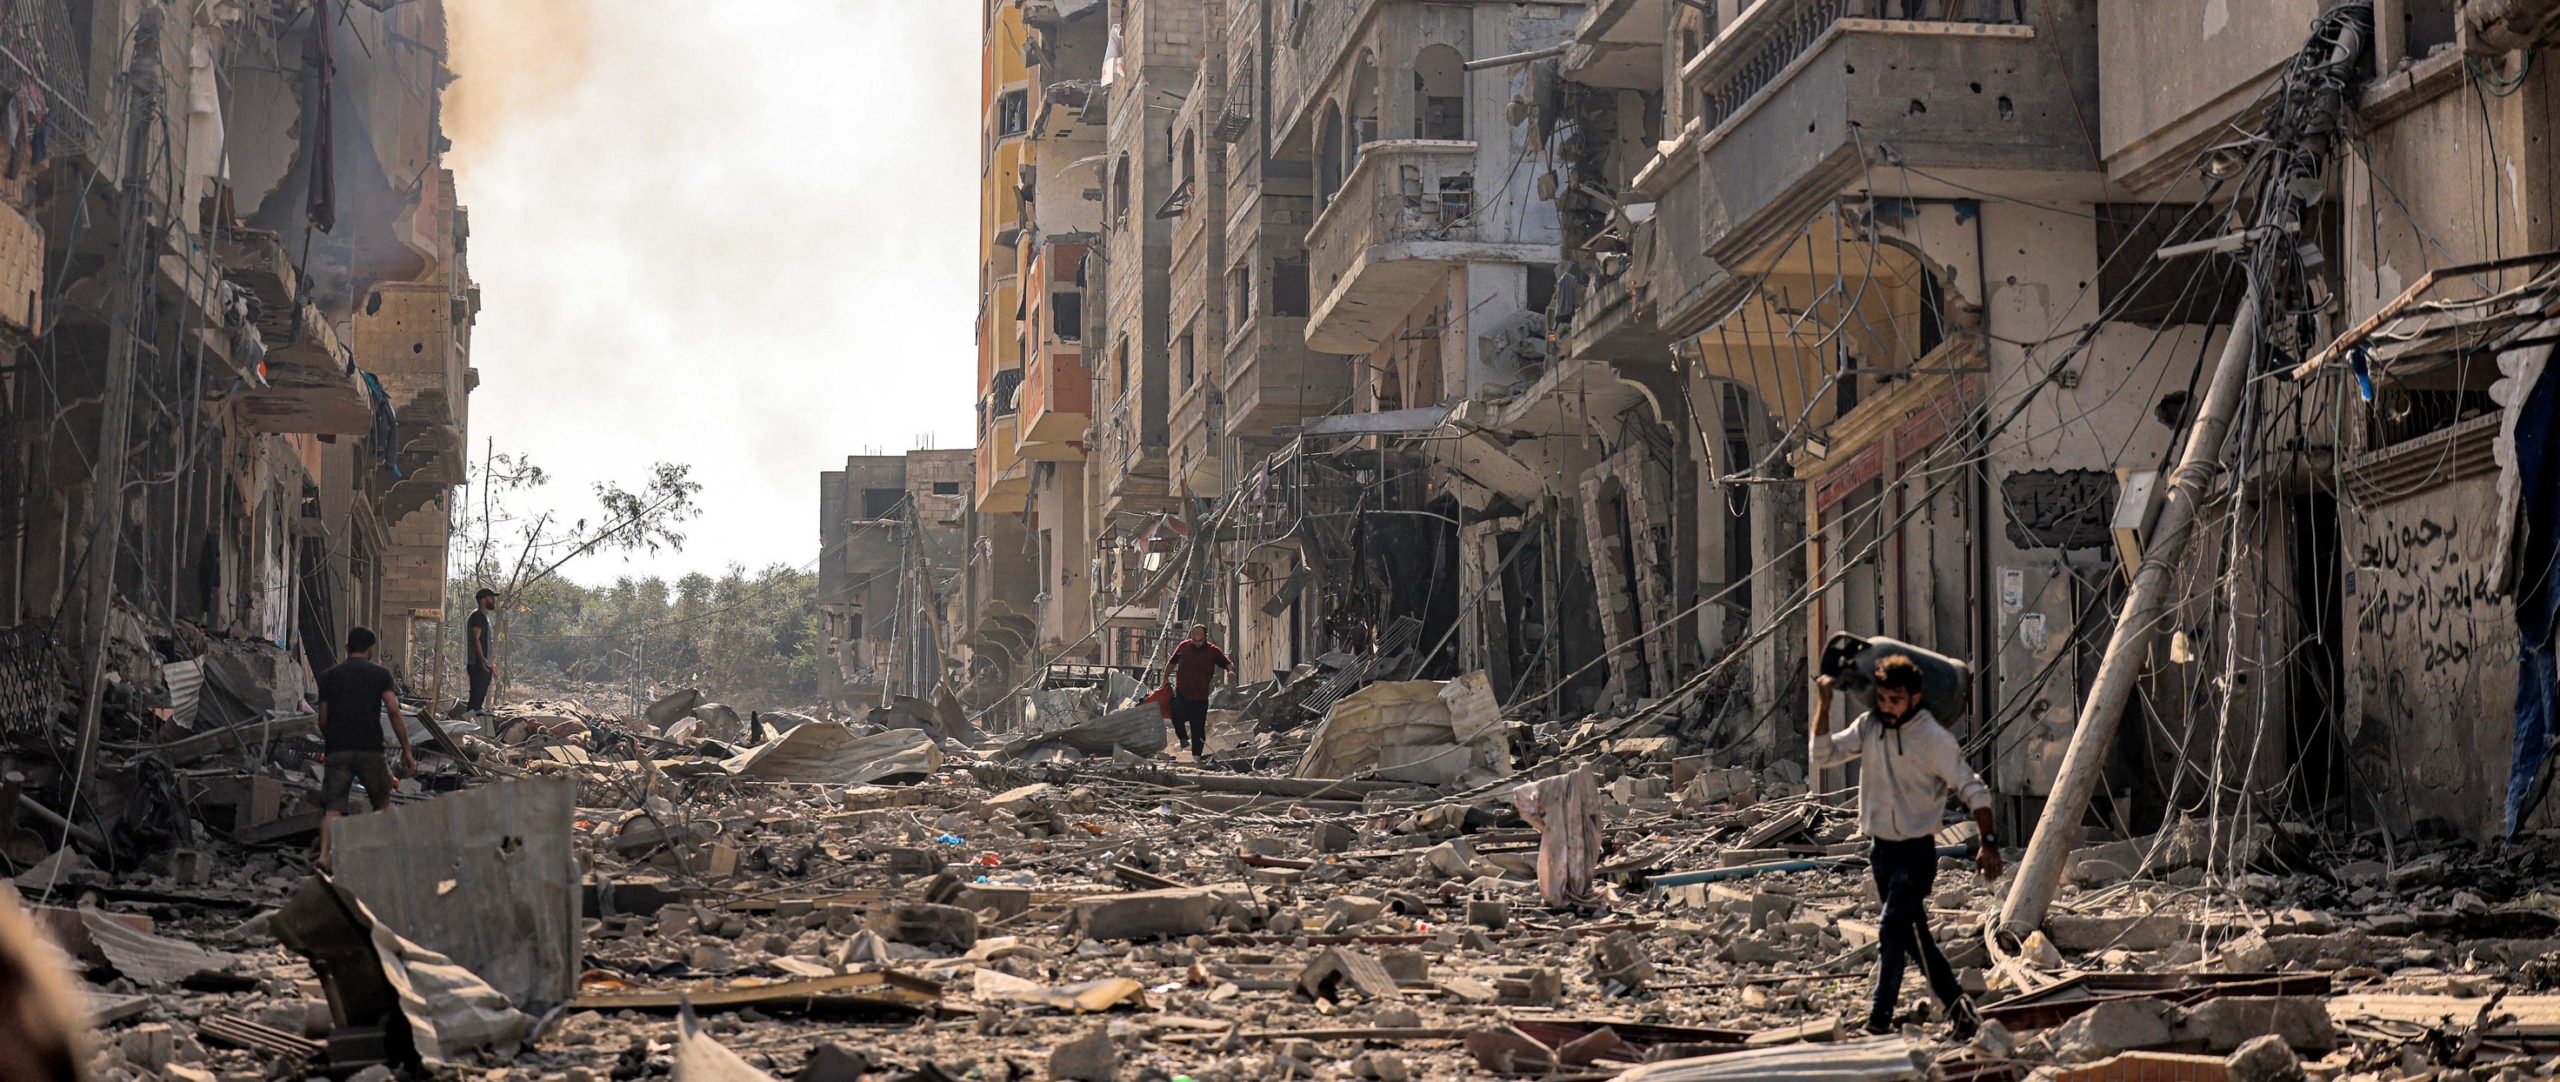 Situación de una área bombardeada en Gaza:  escombros y edificios destruidos por todas partes, mientras un hombre camina sobre los escombros.